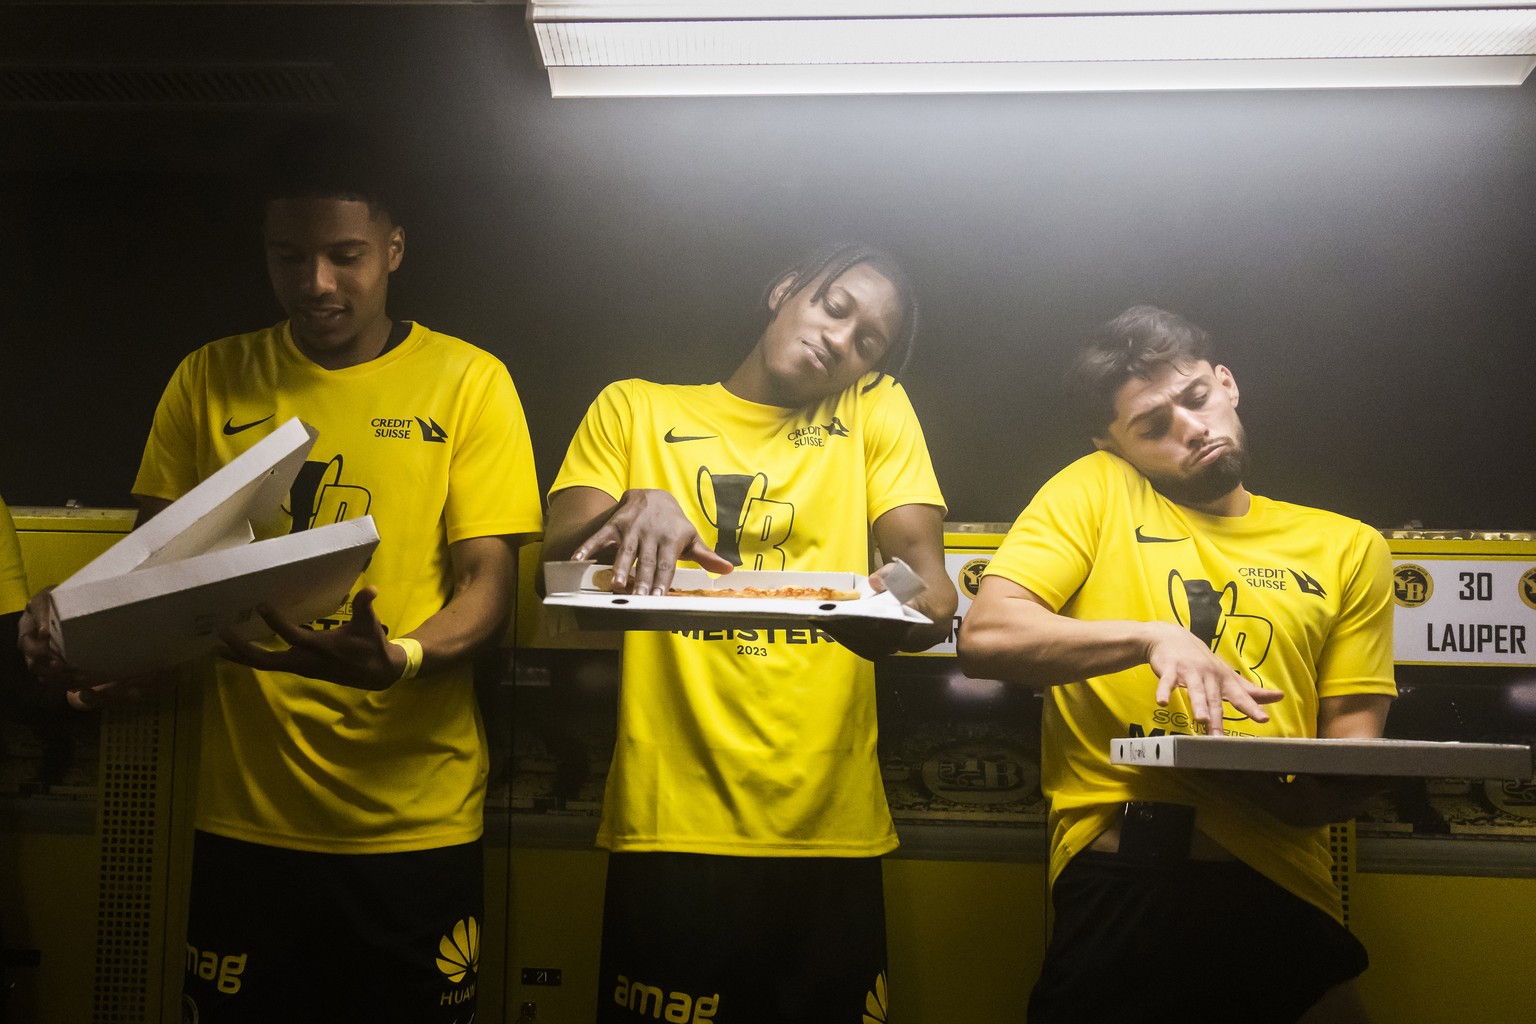 YBs Aurele Amenda, Joel Monteiro und Kastriot Imeri, von links, imitieren einen DJ auf einer Pizzaschachtel, bei der Meisterfeier mit Pizza, Bier und Prosecco in der Umkleidekabine des Teams, nach dem ...